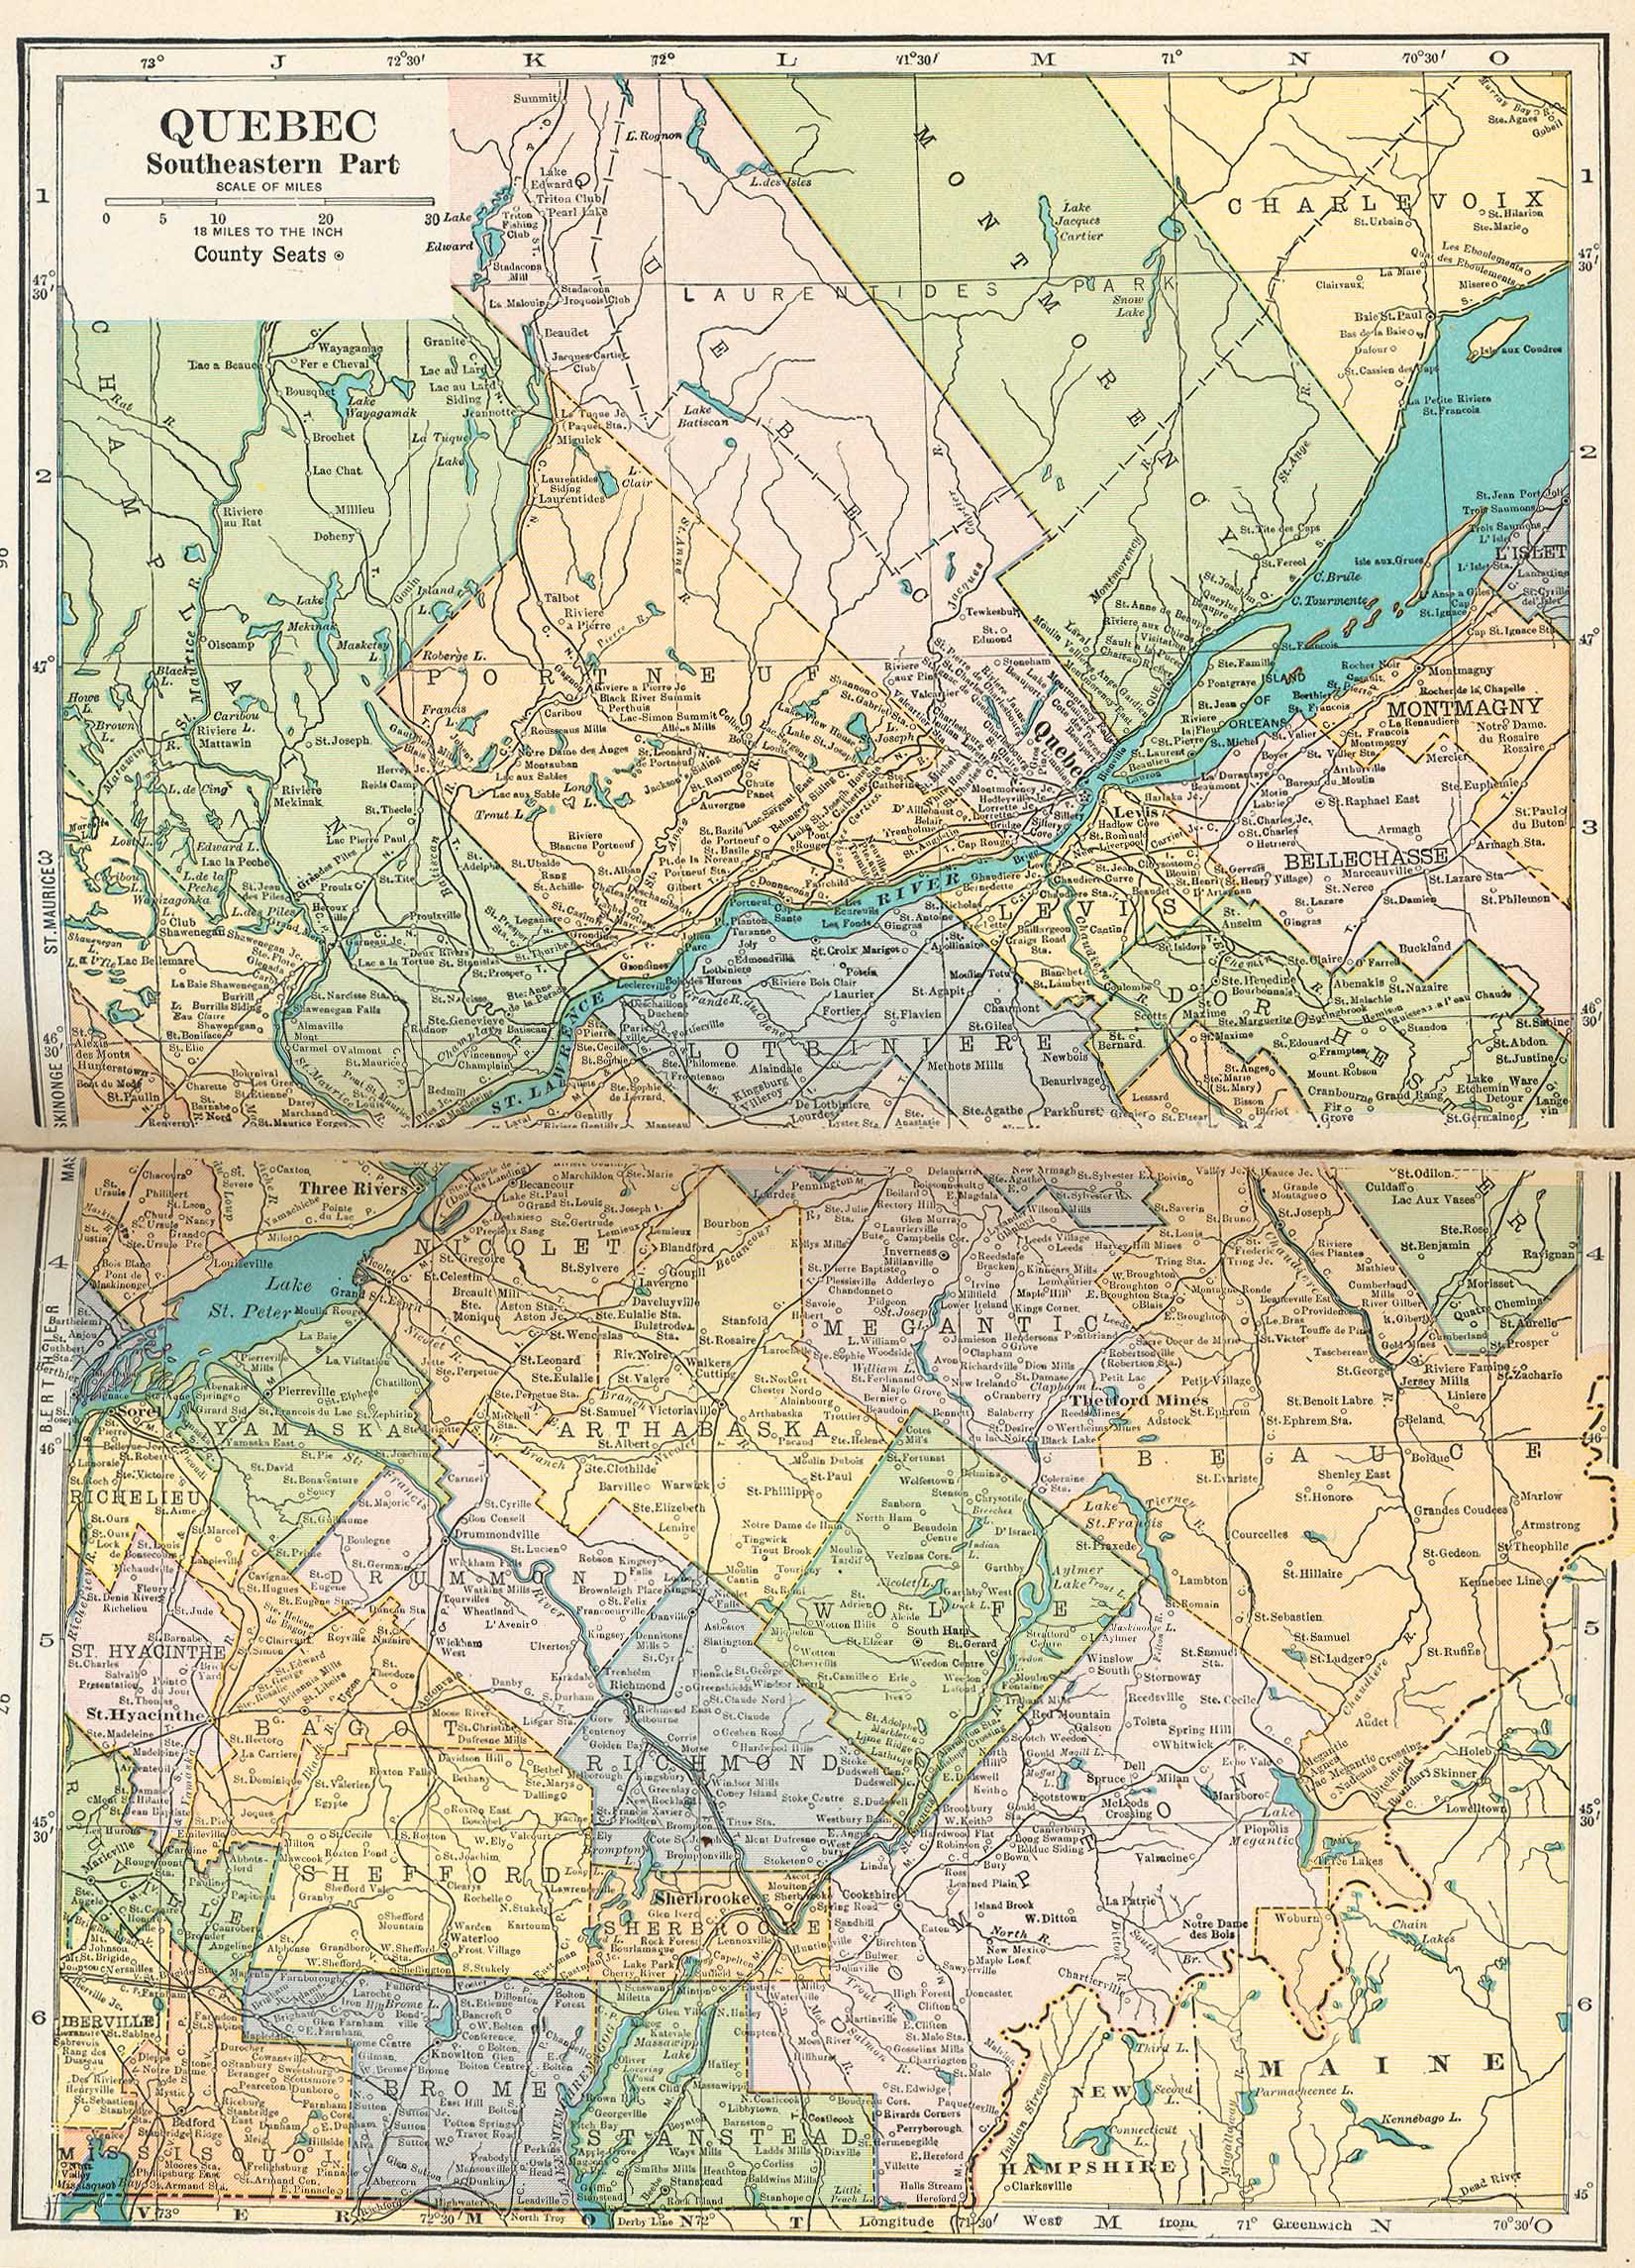 Stare.mapy.z.roznych.czesci.swiata.-.XIX.i.XX.wiek.sam_son - quebec southeastern 1921.jpg